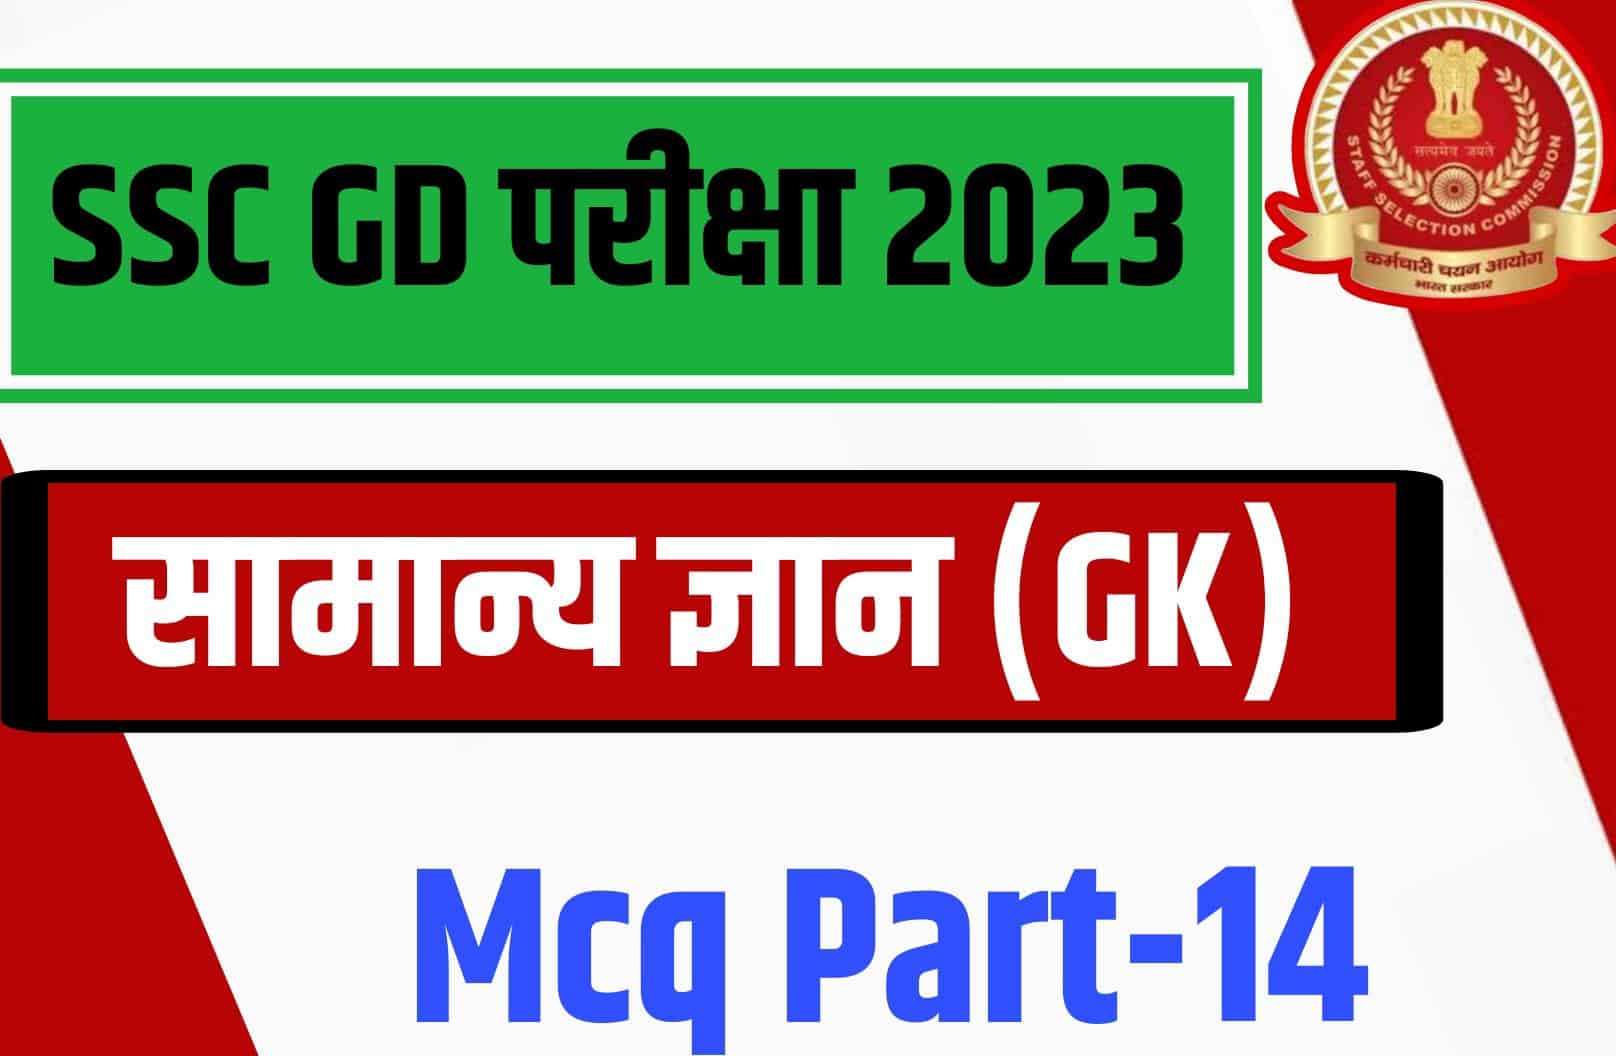 SSC GD Exam 2023 GK MCQ – 14 | एसएससी जीडी परीक्षा महत्वपूर्ण प्रश्न और उत्तर के साथ